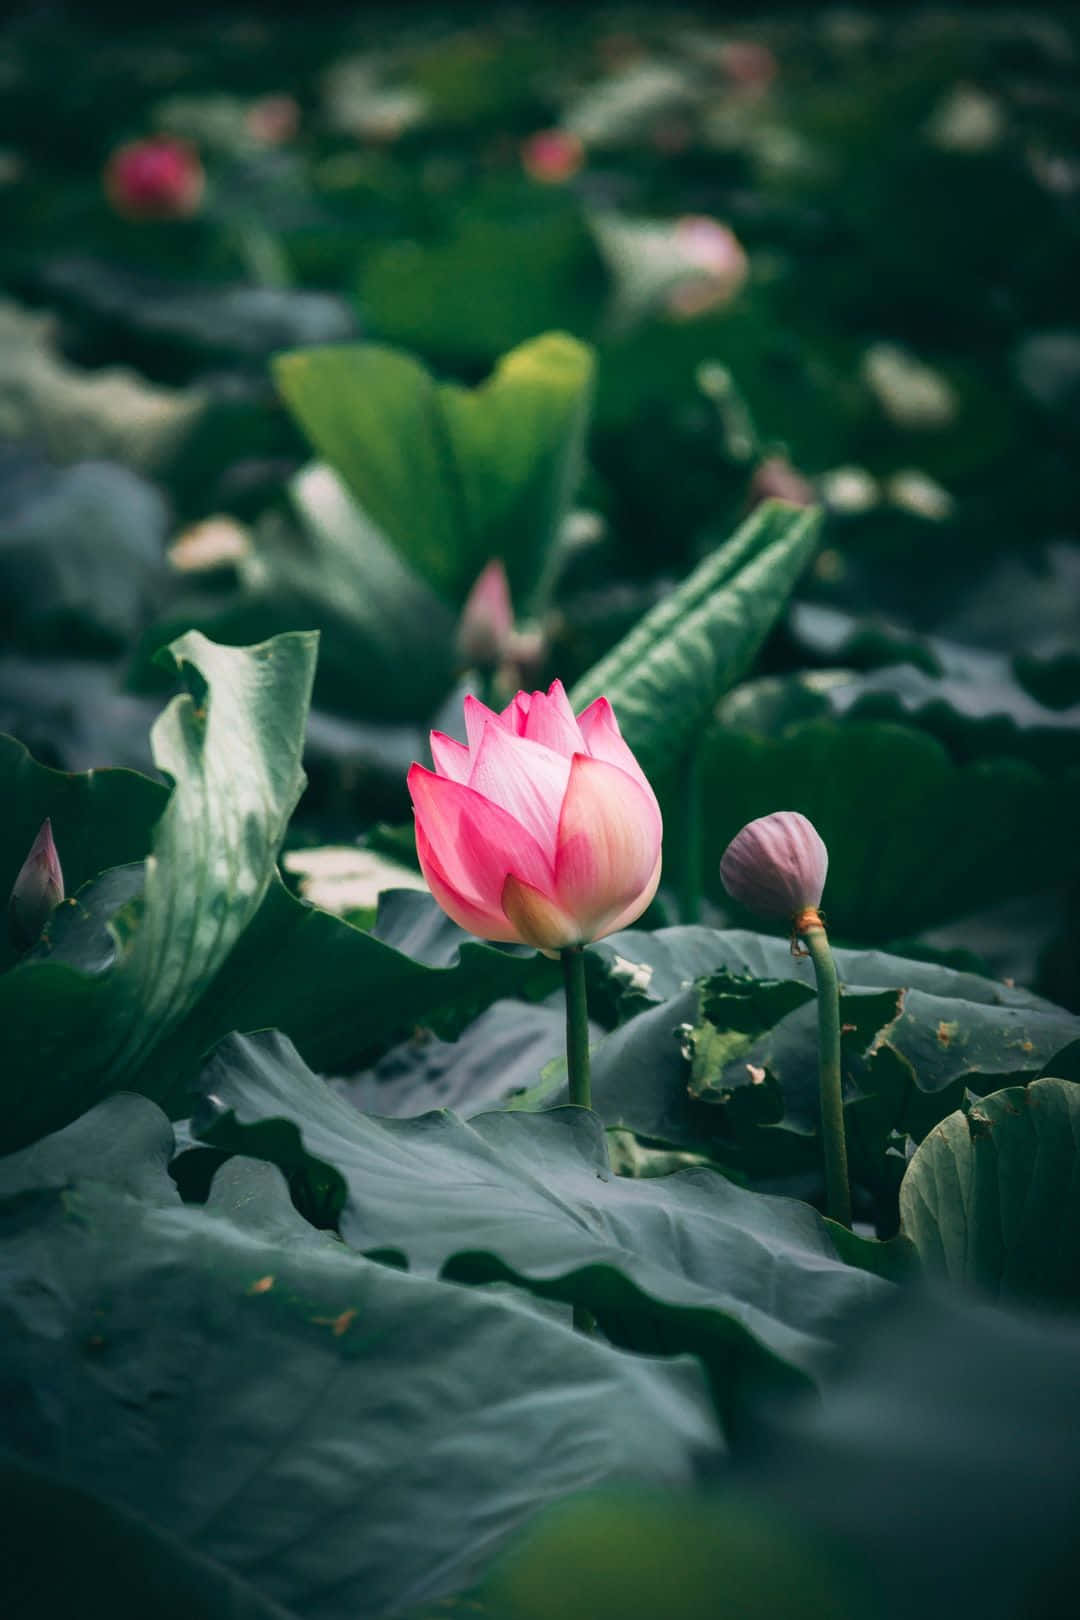 Stunning Lotus Flower in Bloom